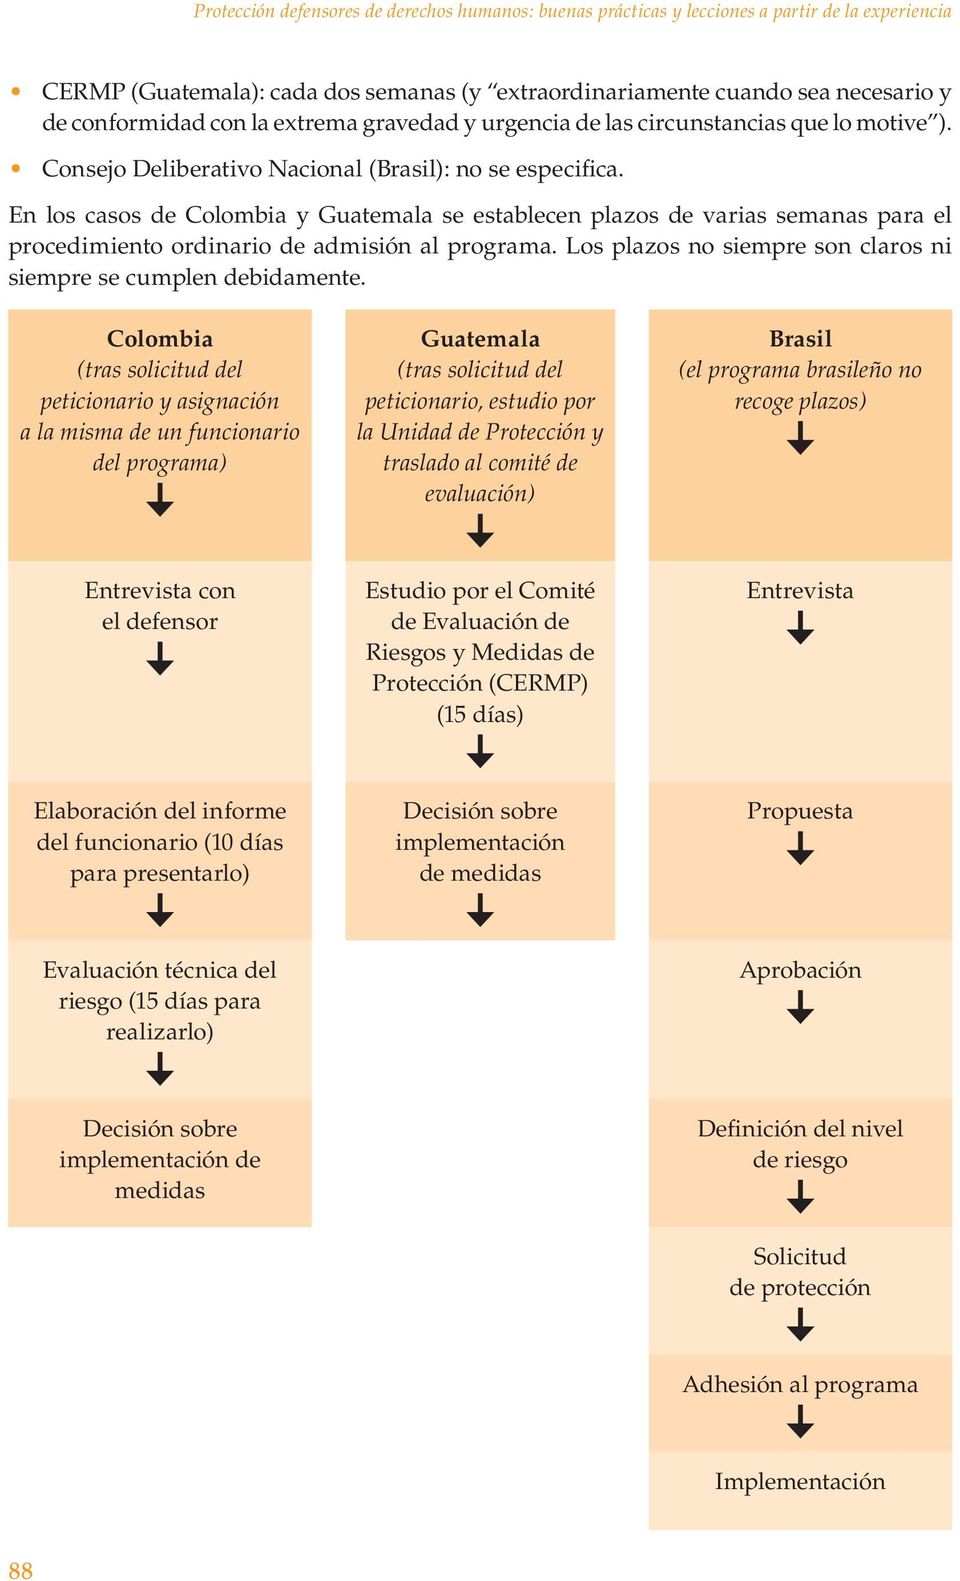 En los casos de Colombia y Guatemala se establecen plazos de varias semanas para el procedimiento ordinario de admisión al programa. Los plazos no siempre son claros ni siempre se cumplen debidamente.